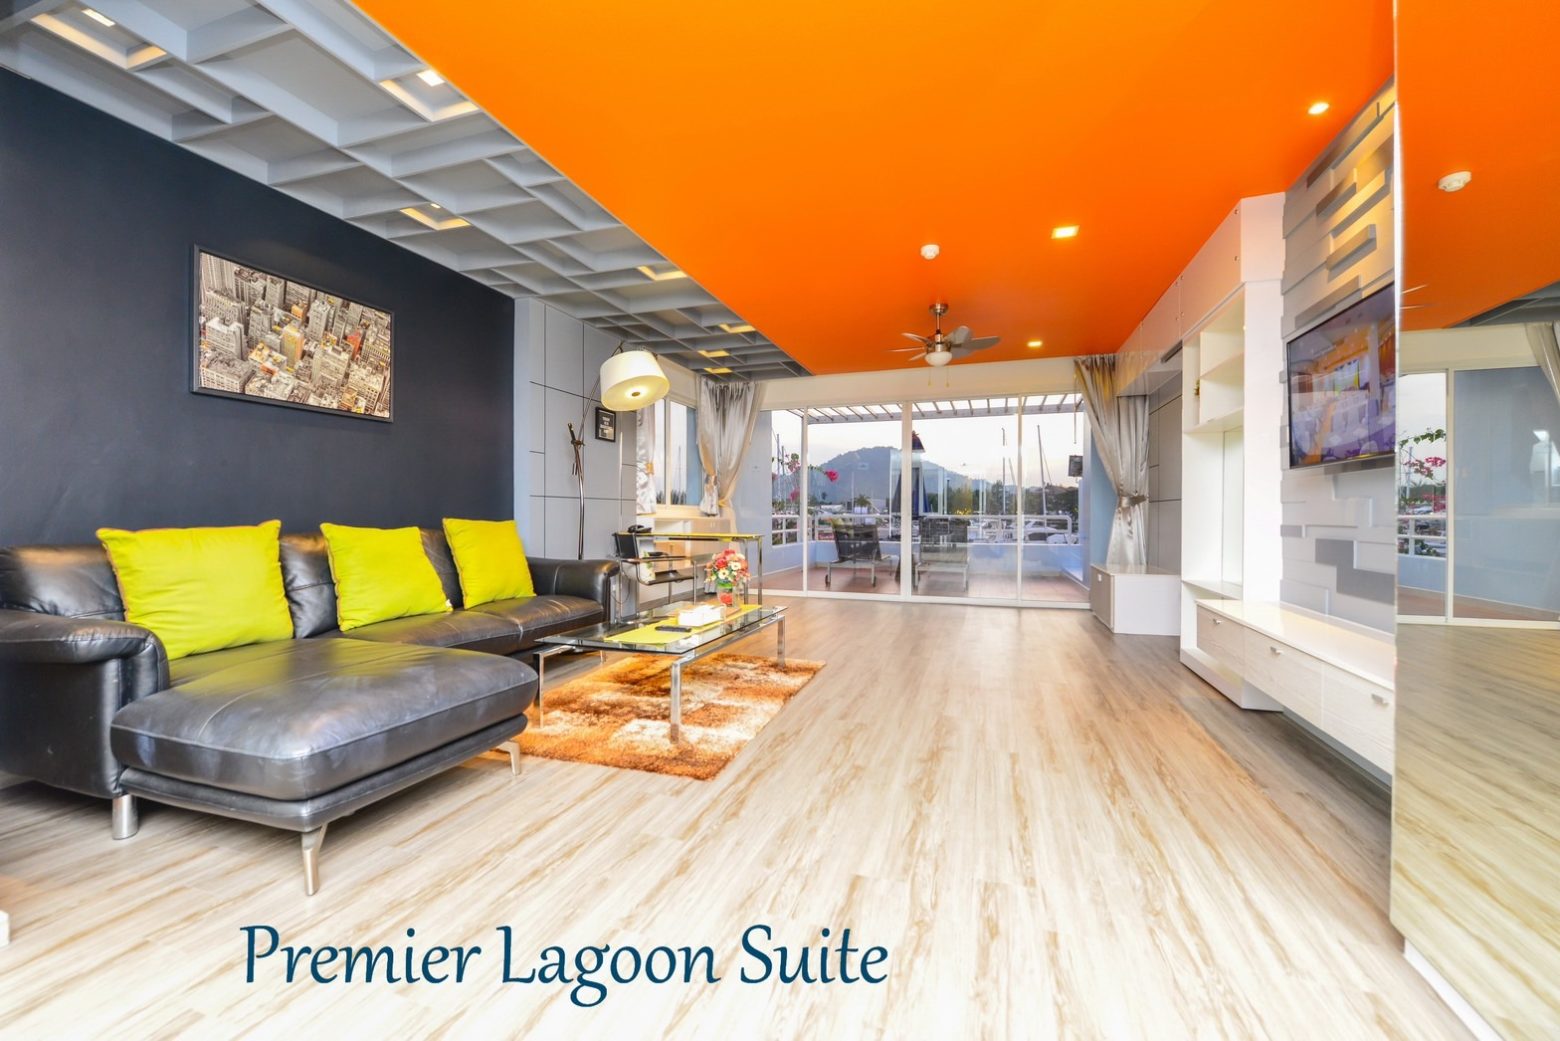 Premier lagoon suite